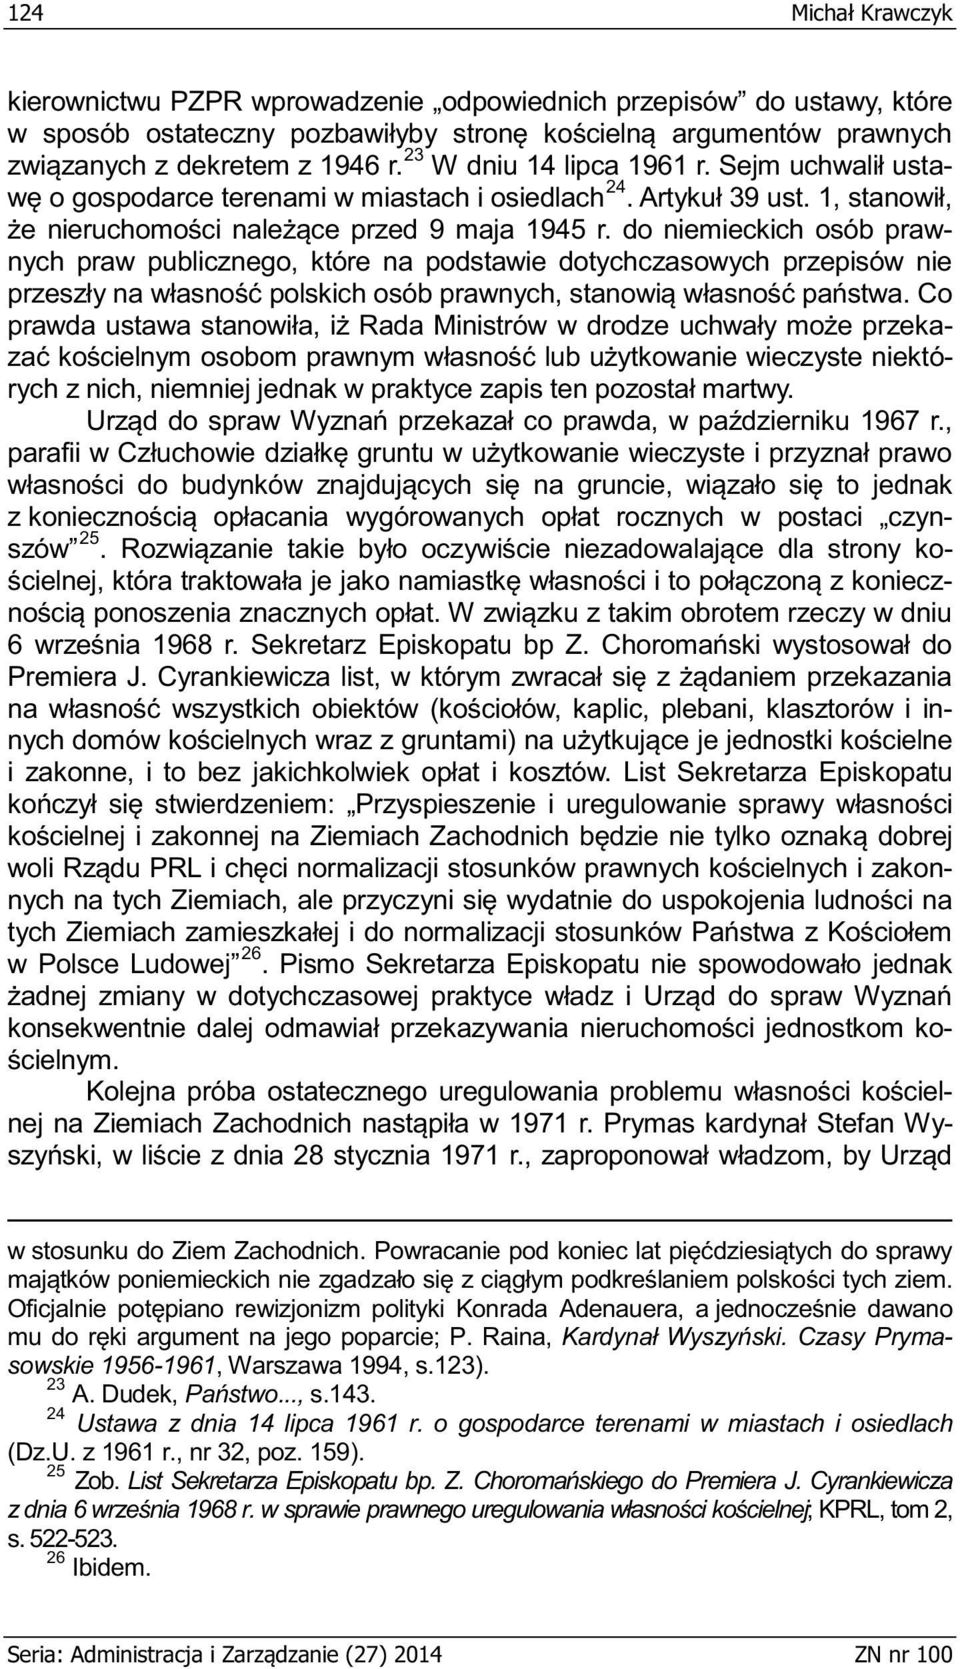 plebani, klasztorów i in- n- w Polsce Ludowej 26 ko- l- y-, w Adenauera, a asowskie 1956-1961, Warszawa 1994, s.123). 23 A. Dudek, s.